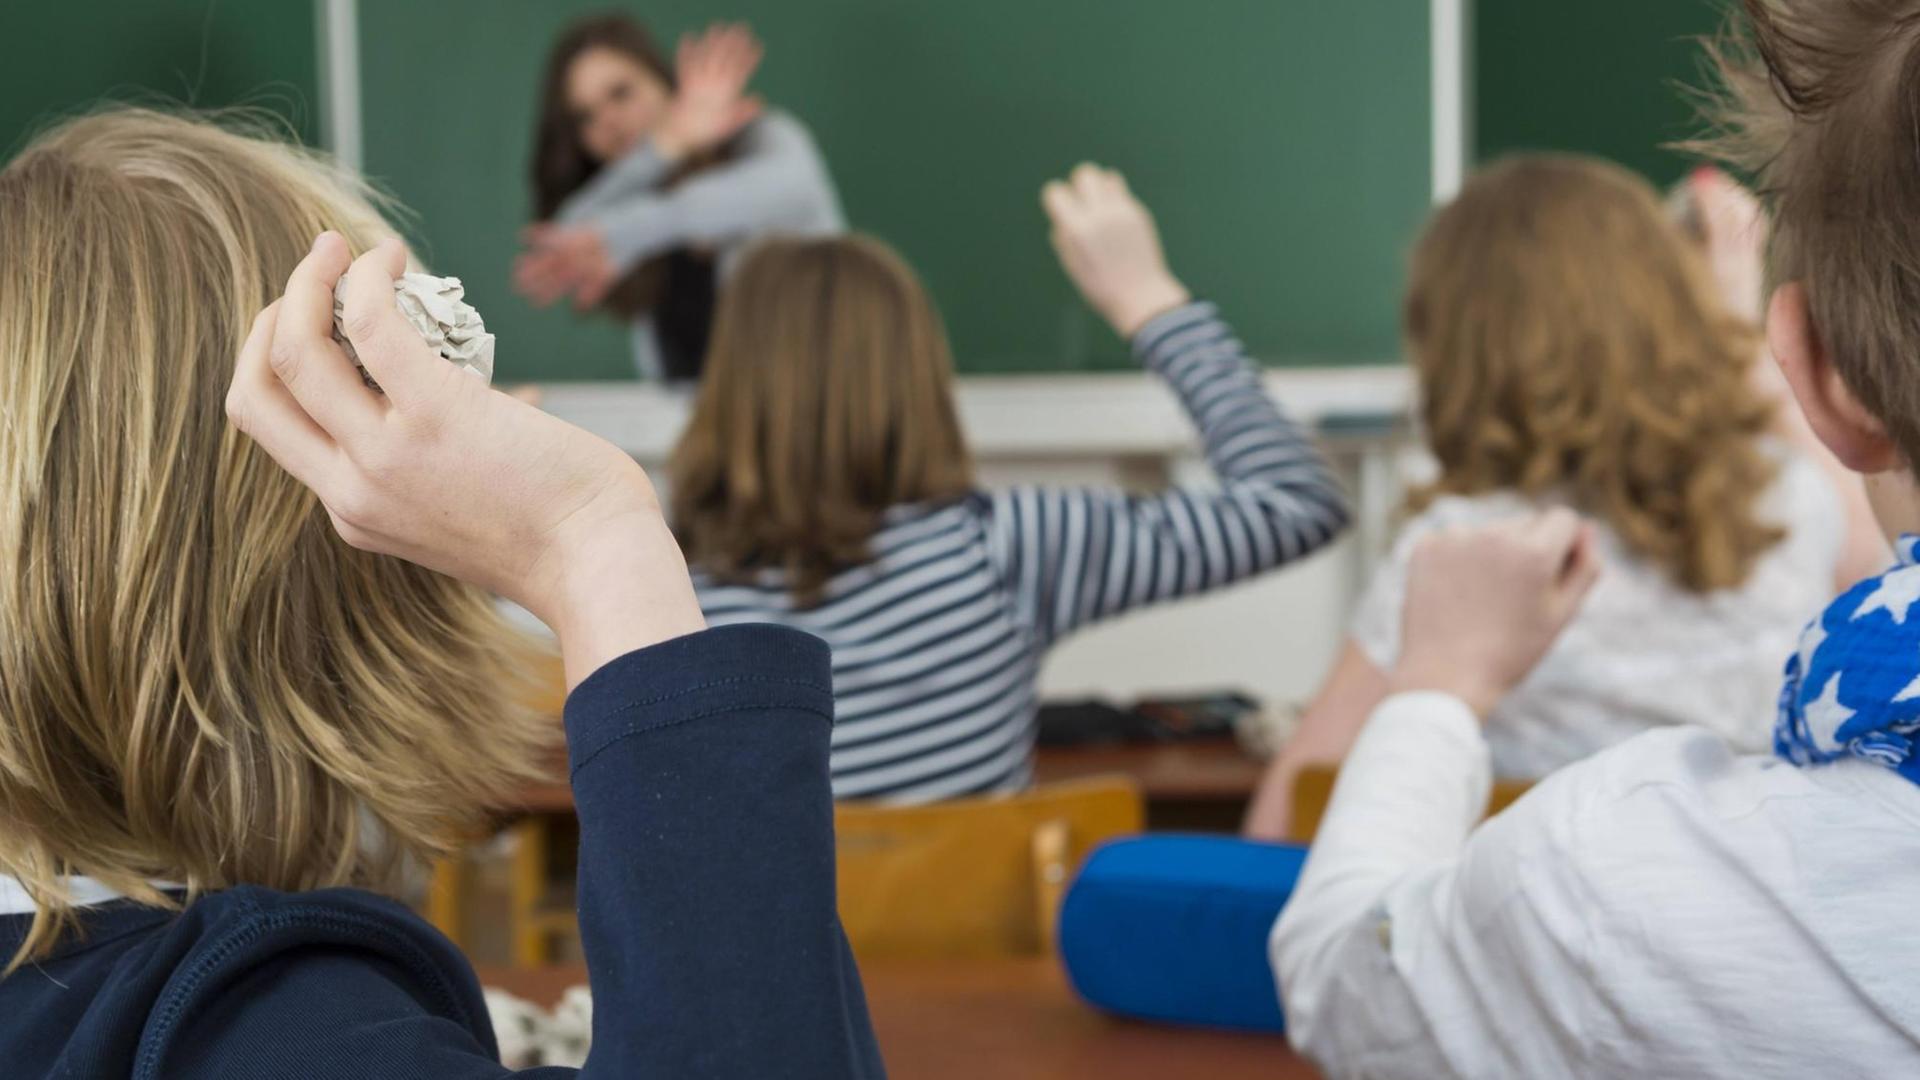 Schüler im Klassenzimmer bewerfen die Lehrerin mit Papierbällen, Mobbing gegen Lehrer